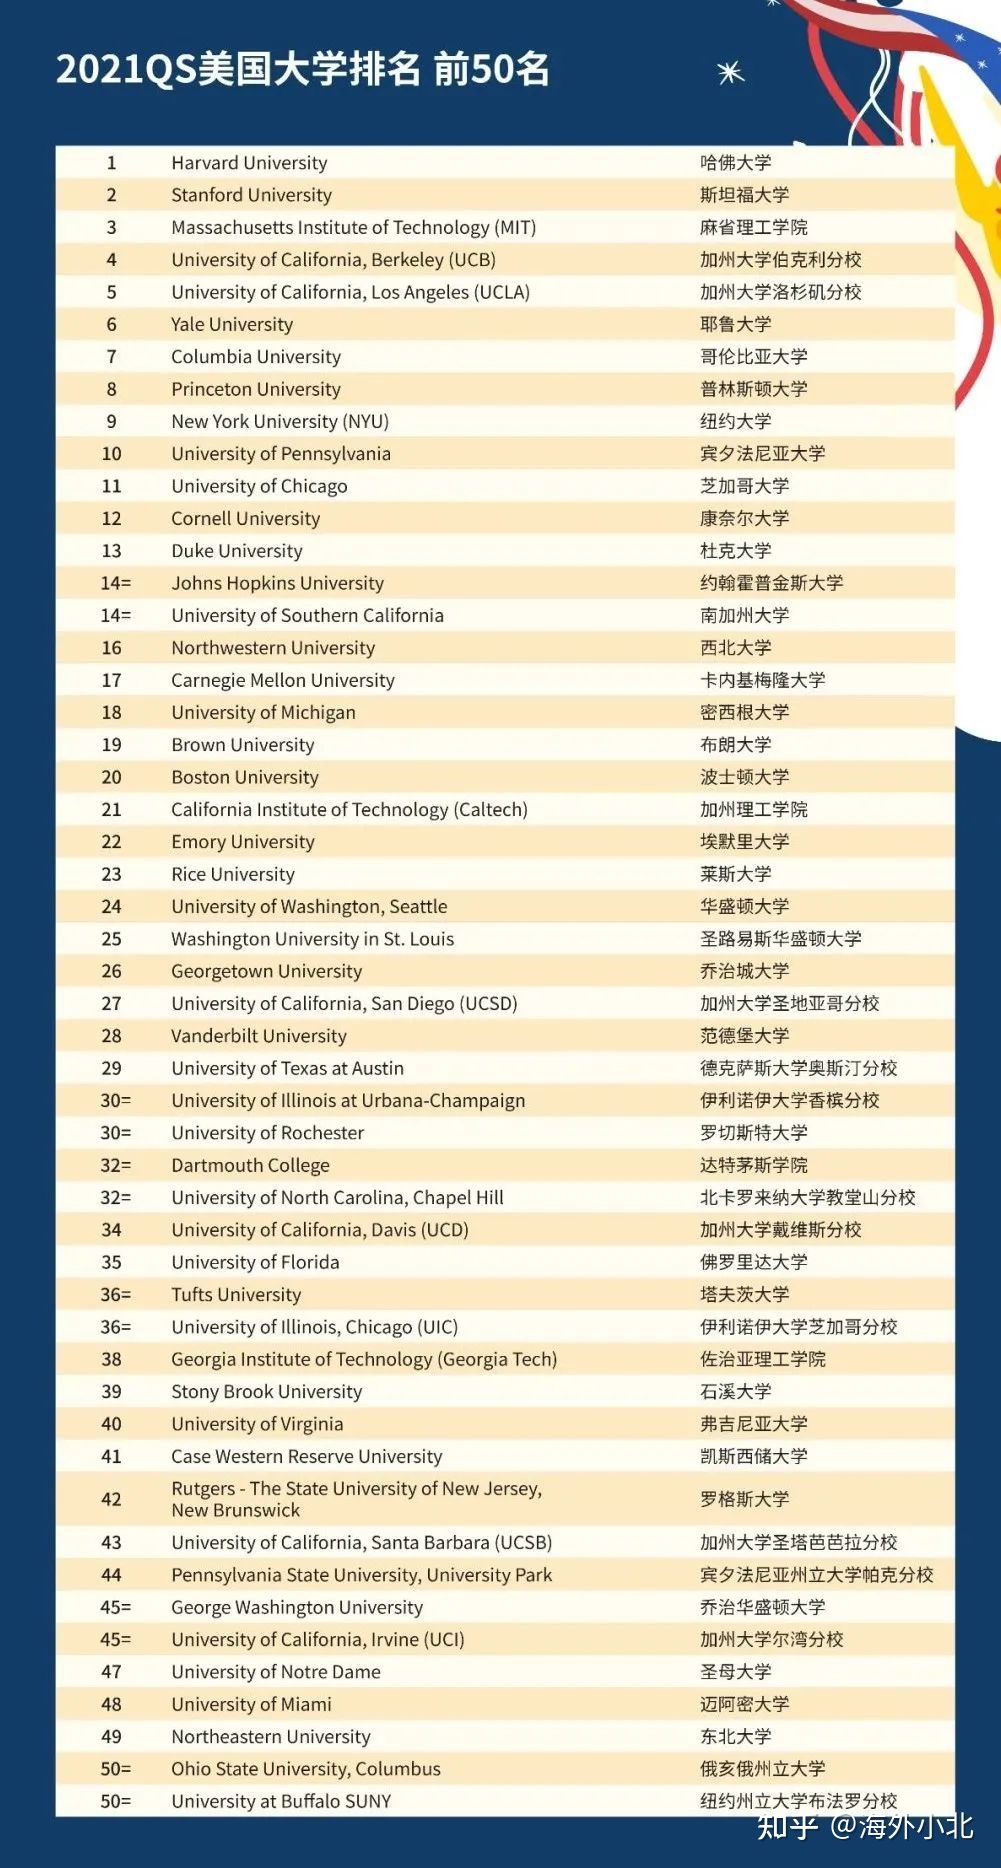 qs世界大学排行榜_亚洲城市大学MBA:从QS世界大学排名看马来西亚教育水平